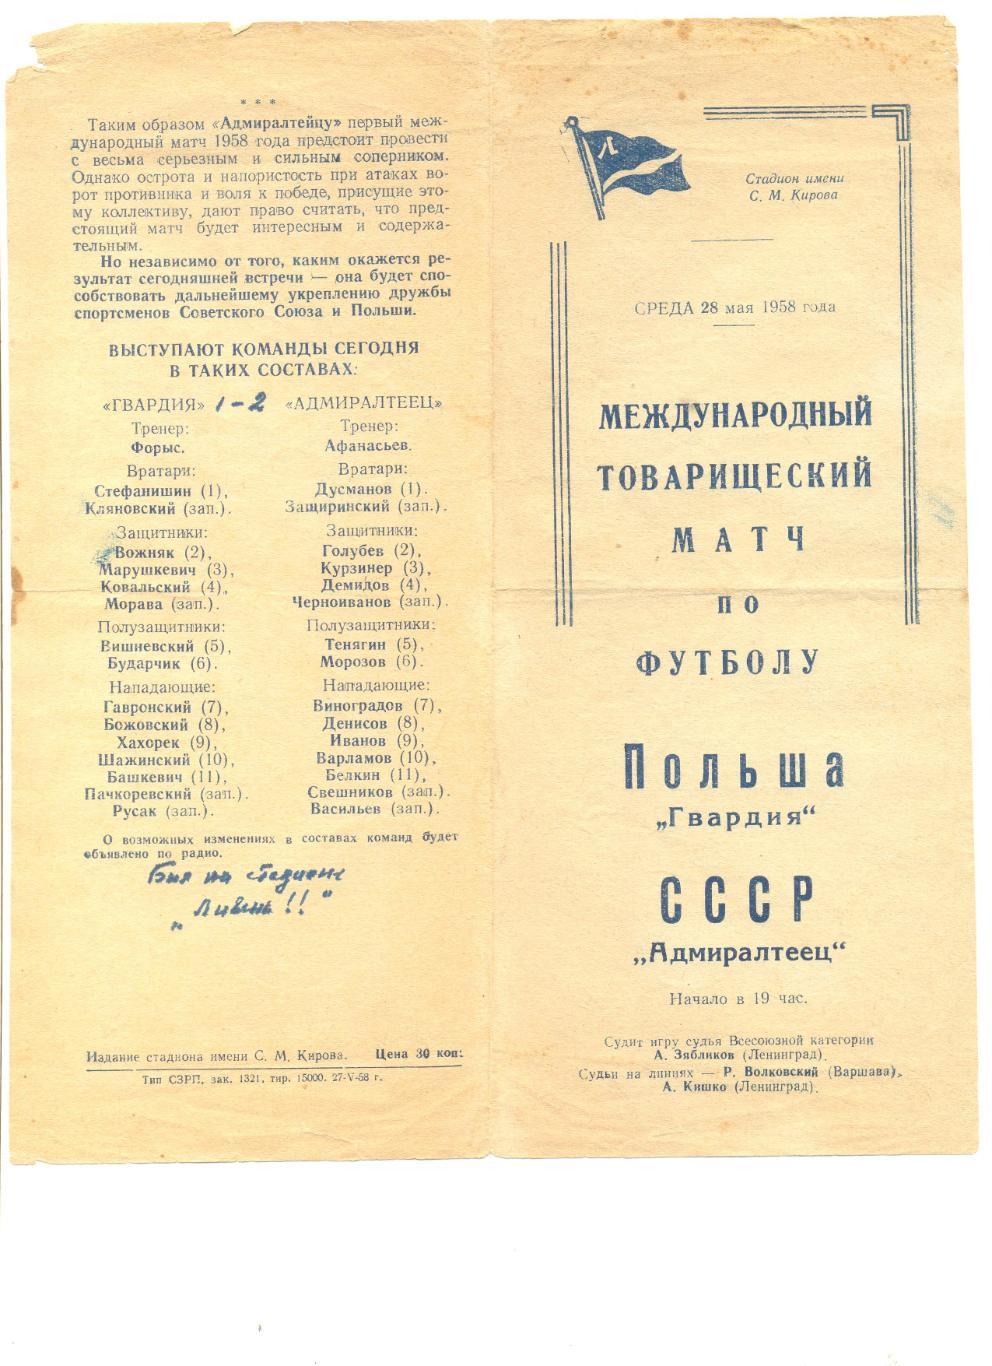 Адмиралтеец Ленинград - Гвардия Польша 28.05.1958 г. МТМ.